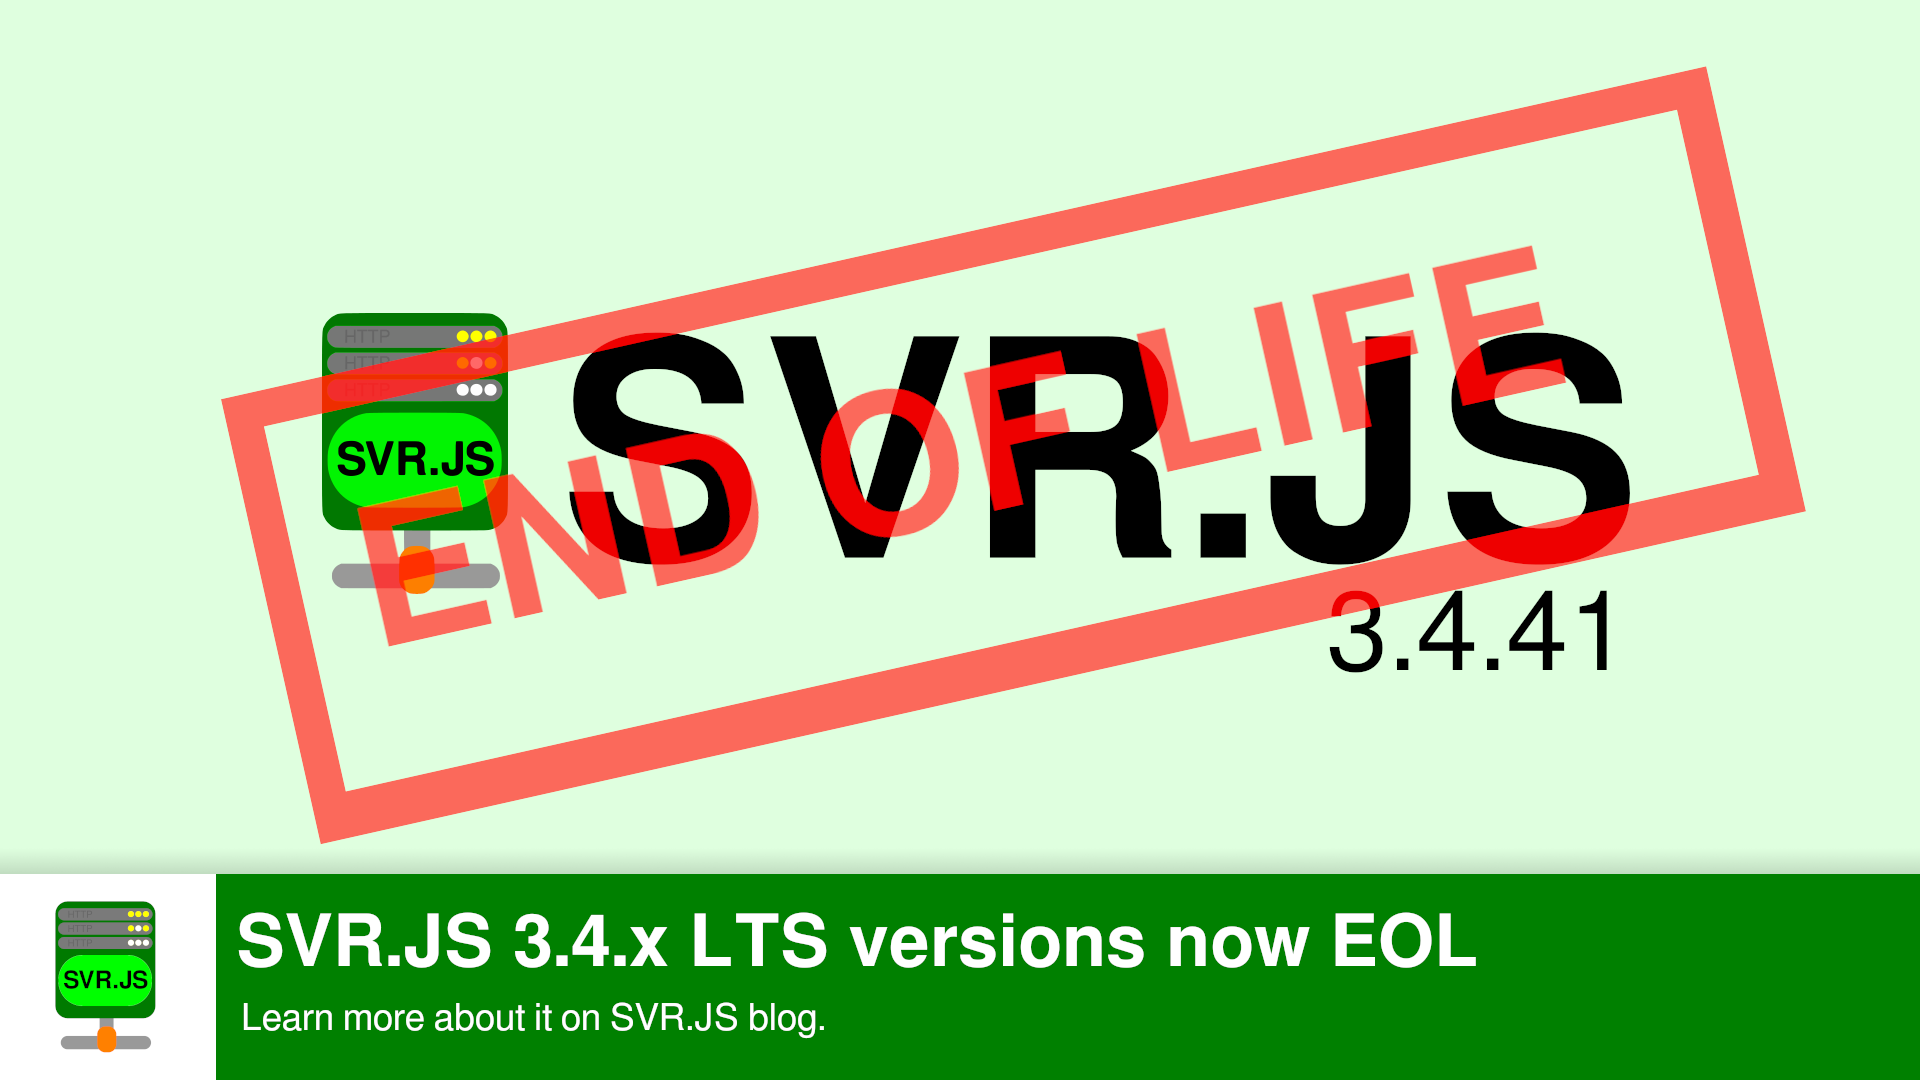 SVR.JS 3.4.x LTS versions now EOL